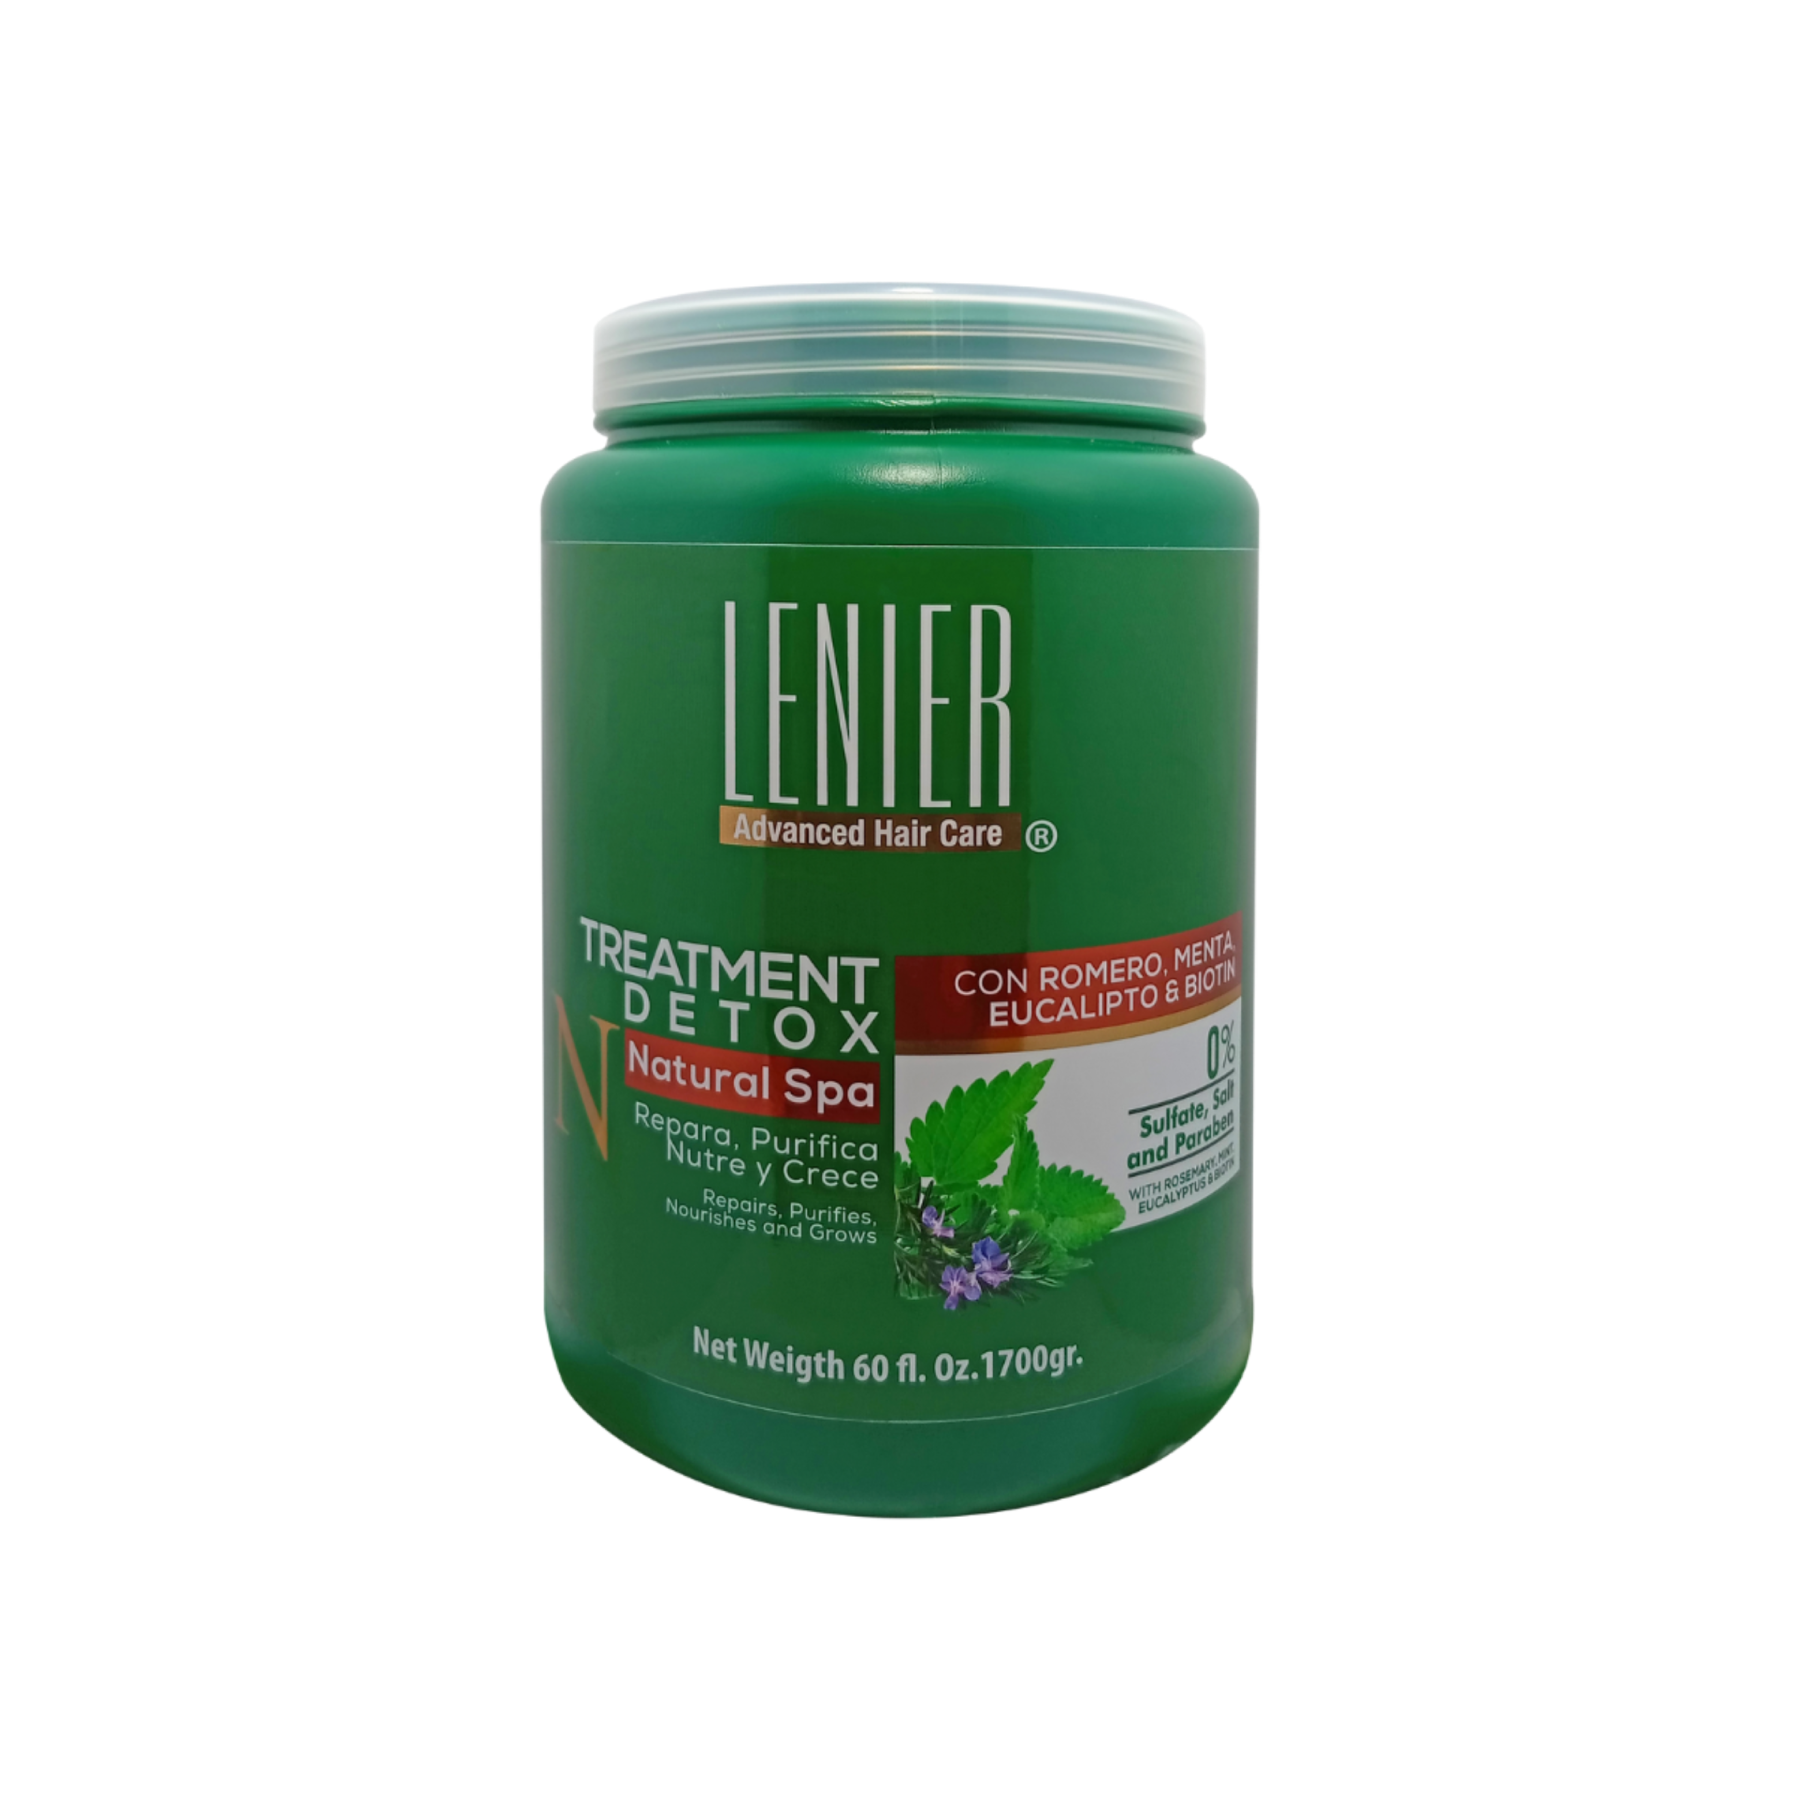 Lenier Detox Treatment 60 oz